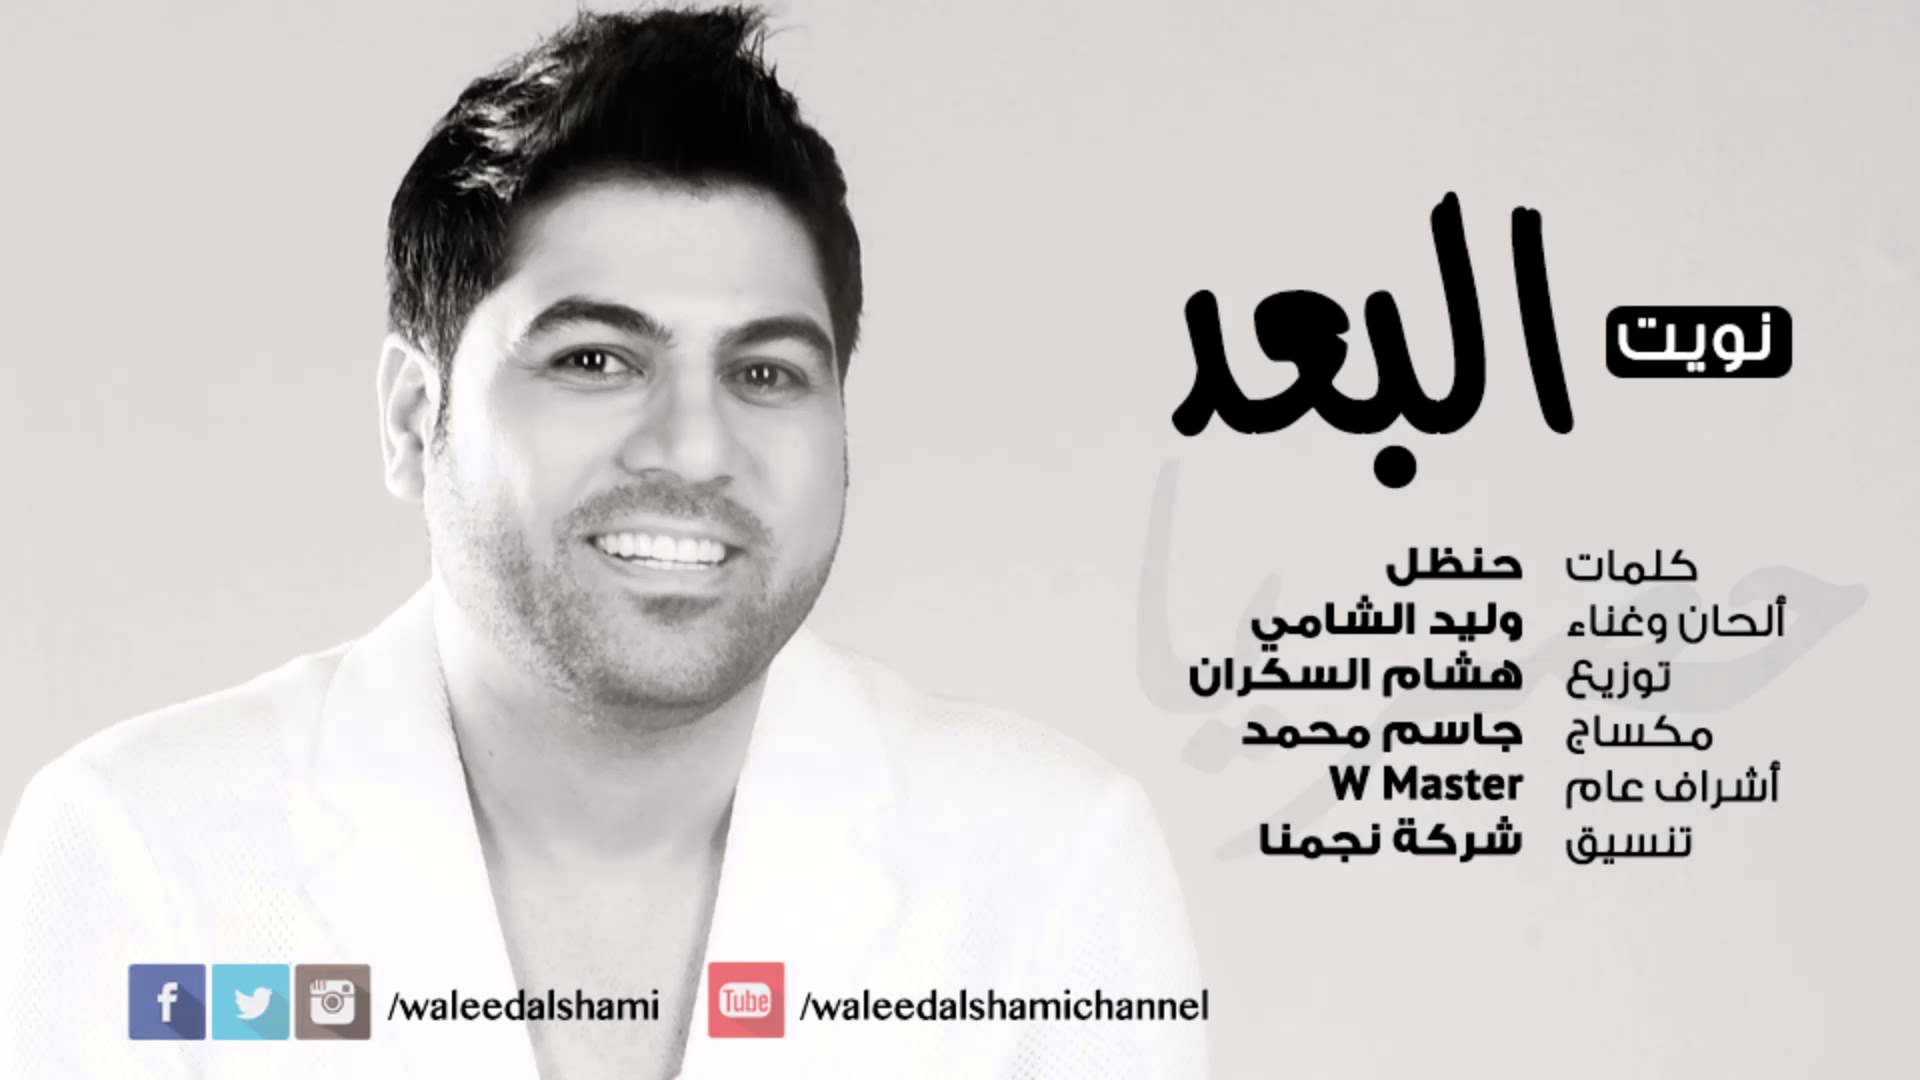 يوتيوب تحميل استماع اغنية نويت البعد وليد الشامي 2015 Mp3